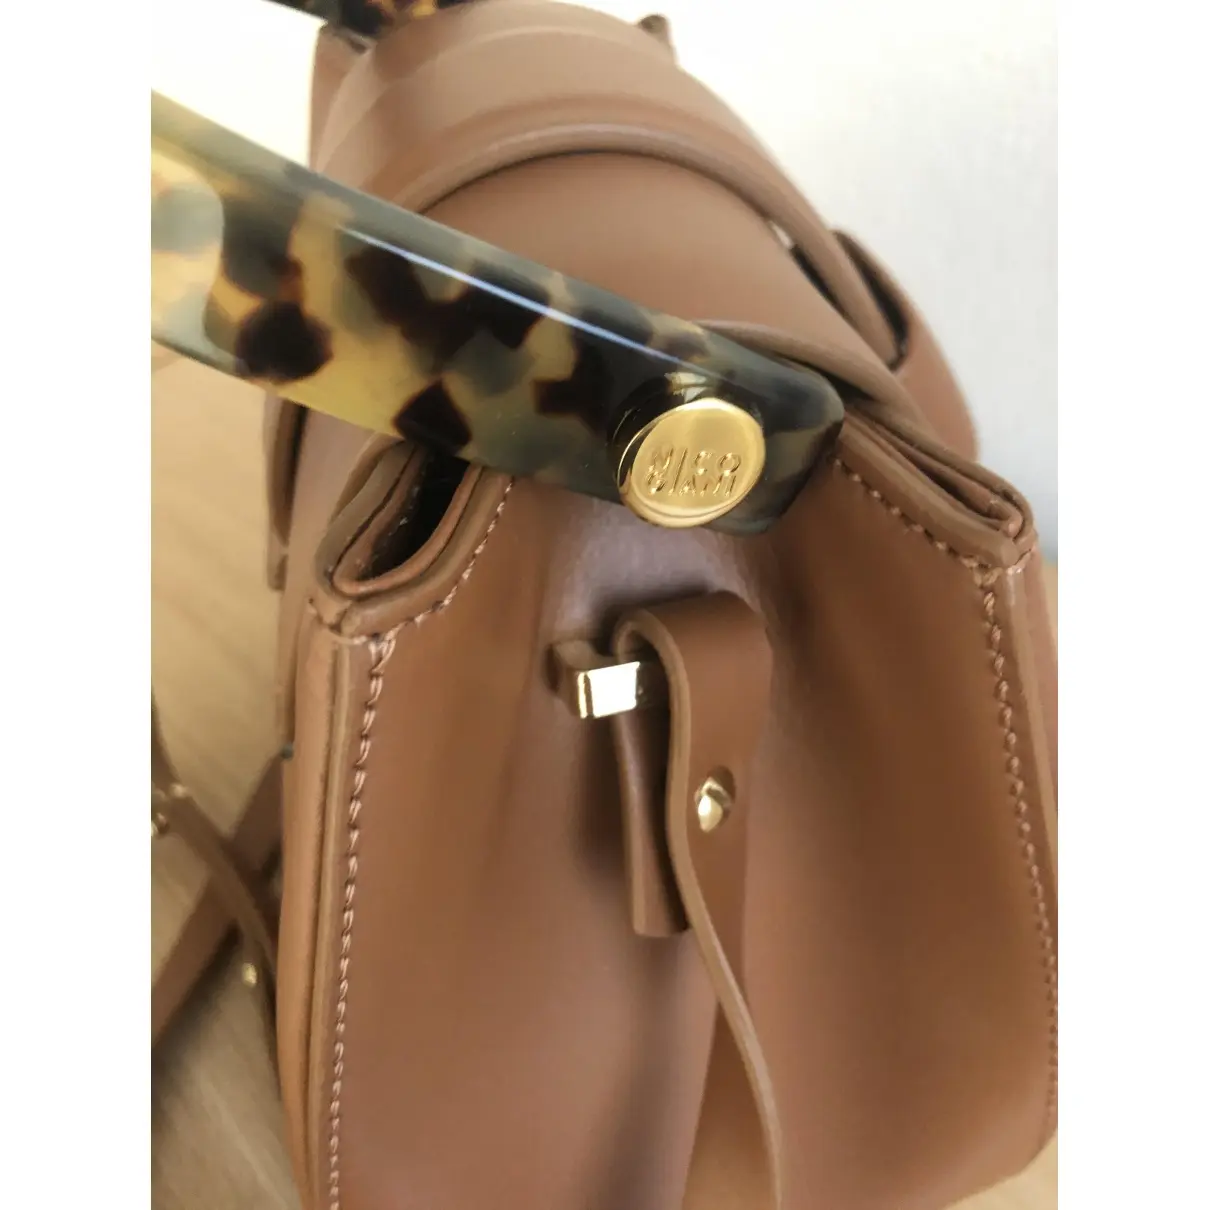 Buy Nico Giani Leather handbag online